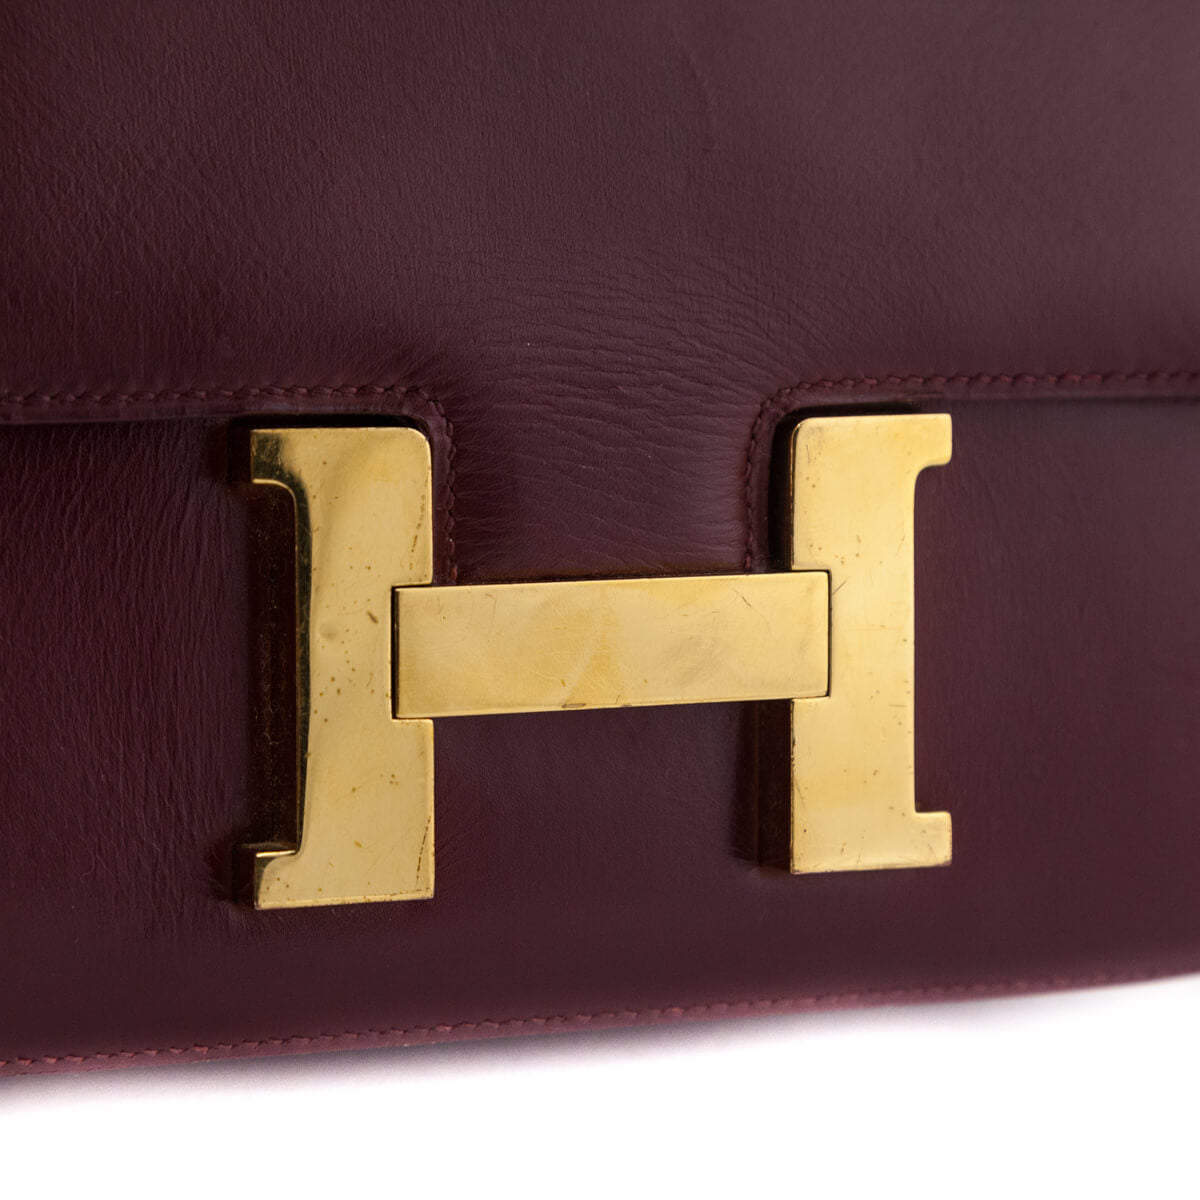 Gloss Vintage & Luxury Bag Ltd on Instagram: Hermes Hac a dos pm size on  158cm model #hermeshacados #glossvintage